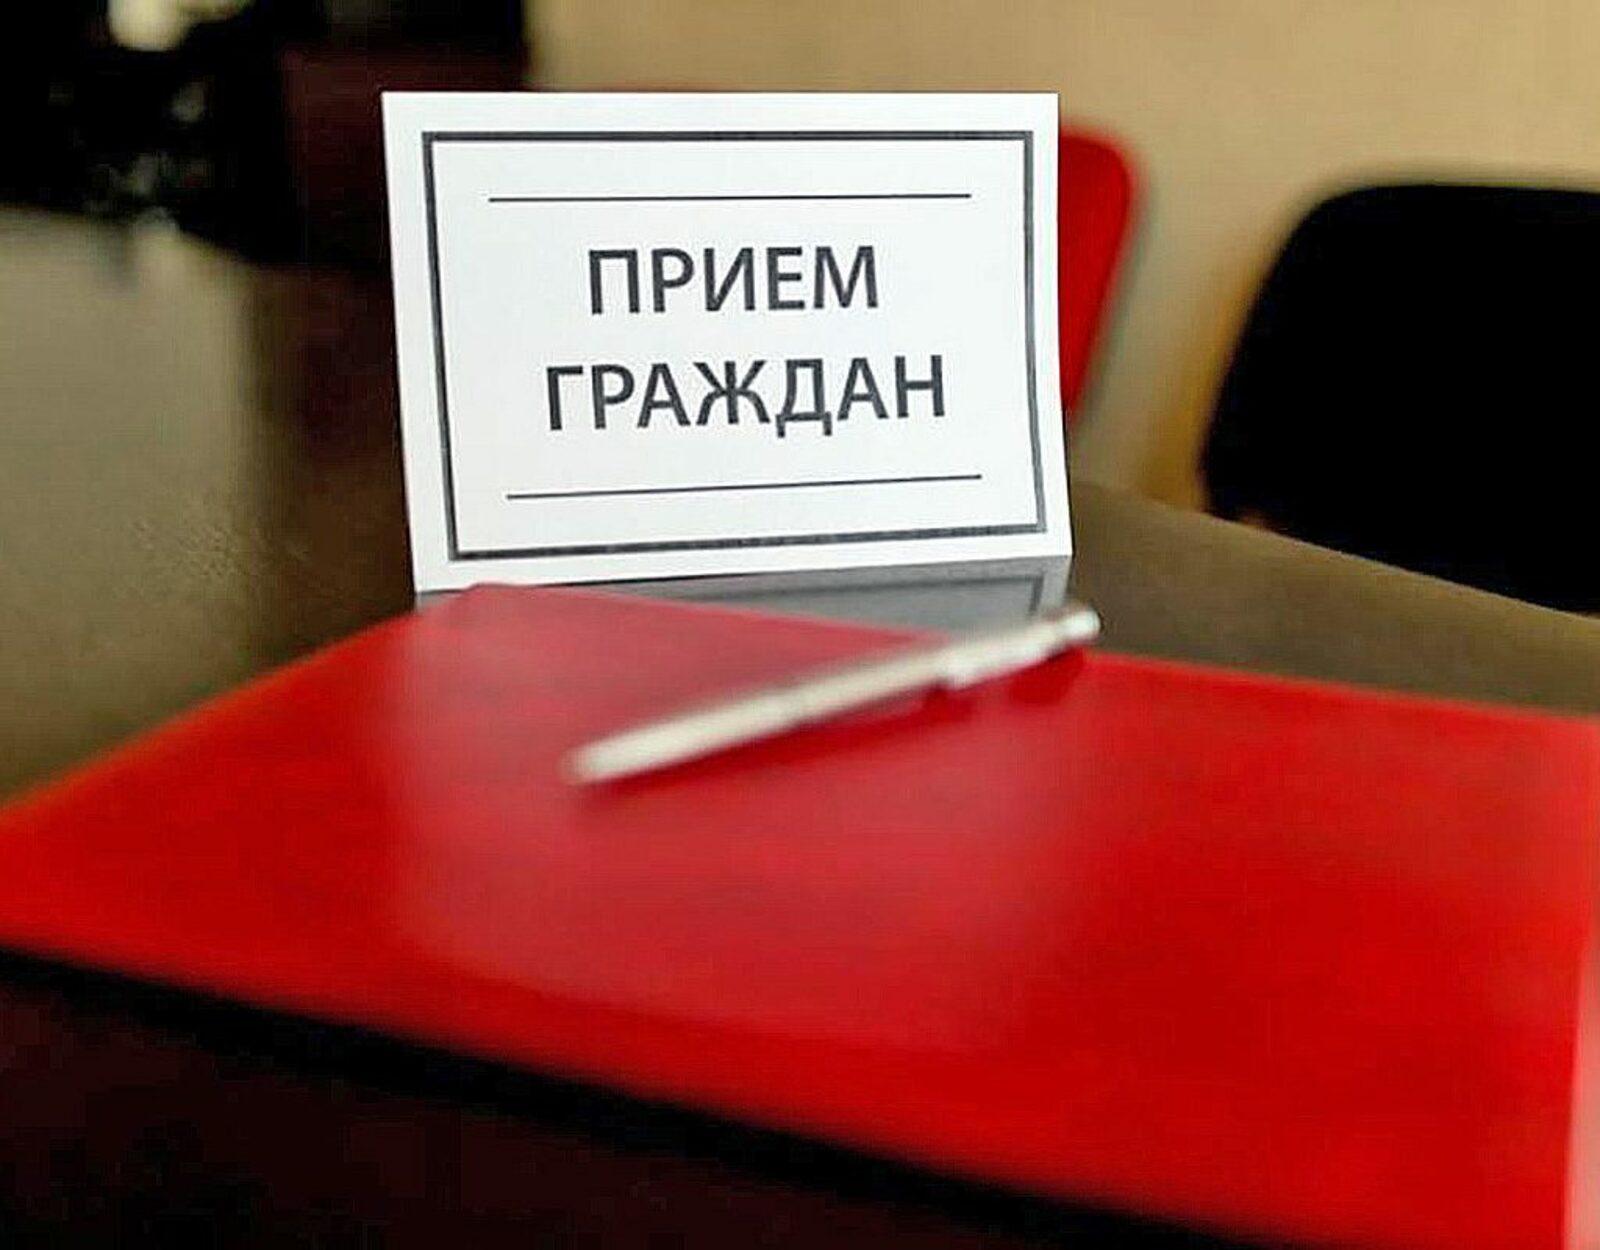 5-9 декабря состоится личный прием граждан в приёмной Президента Российской Федерации в РБ